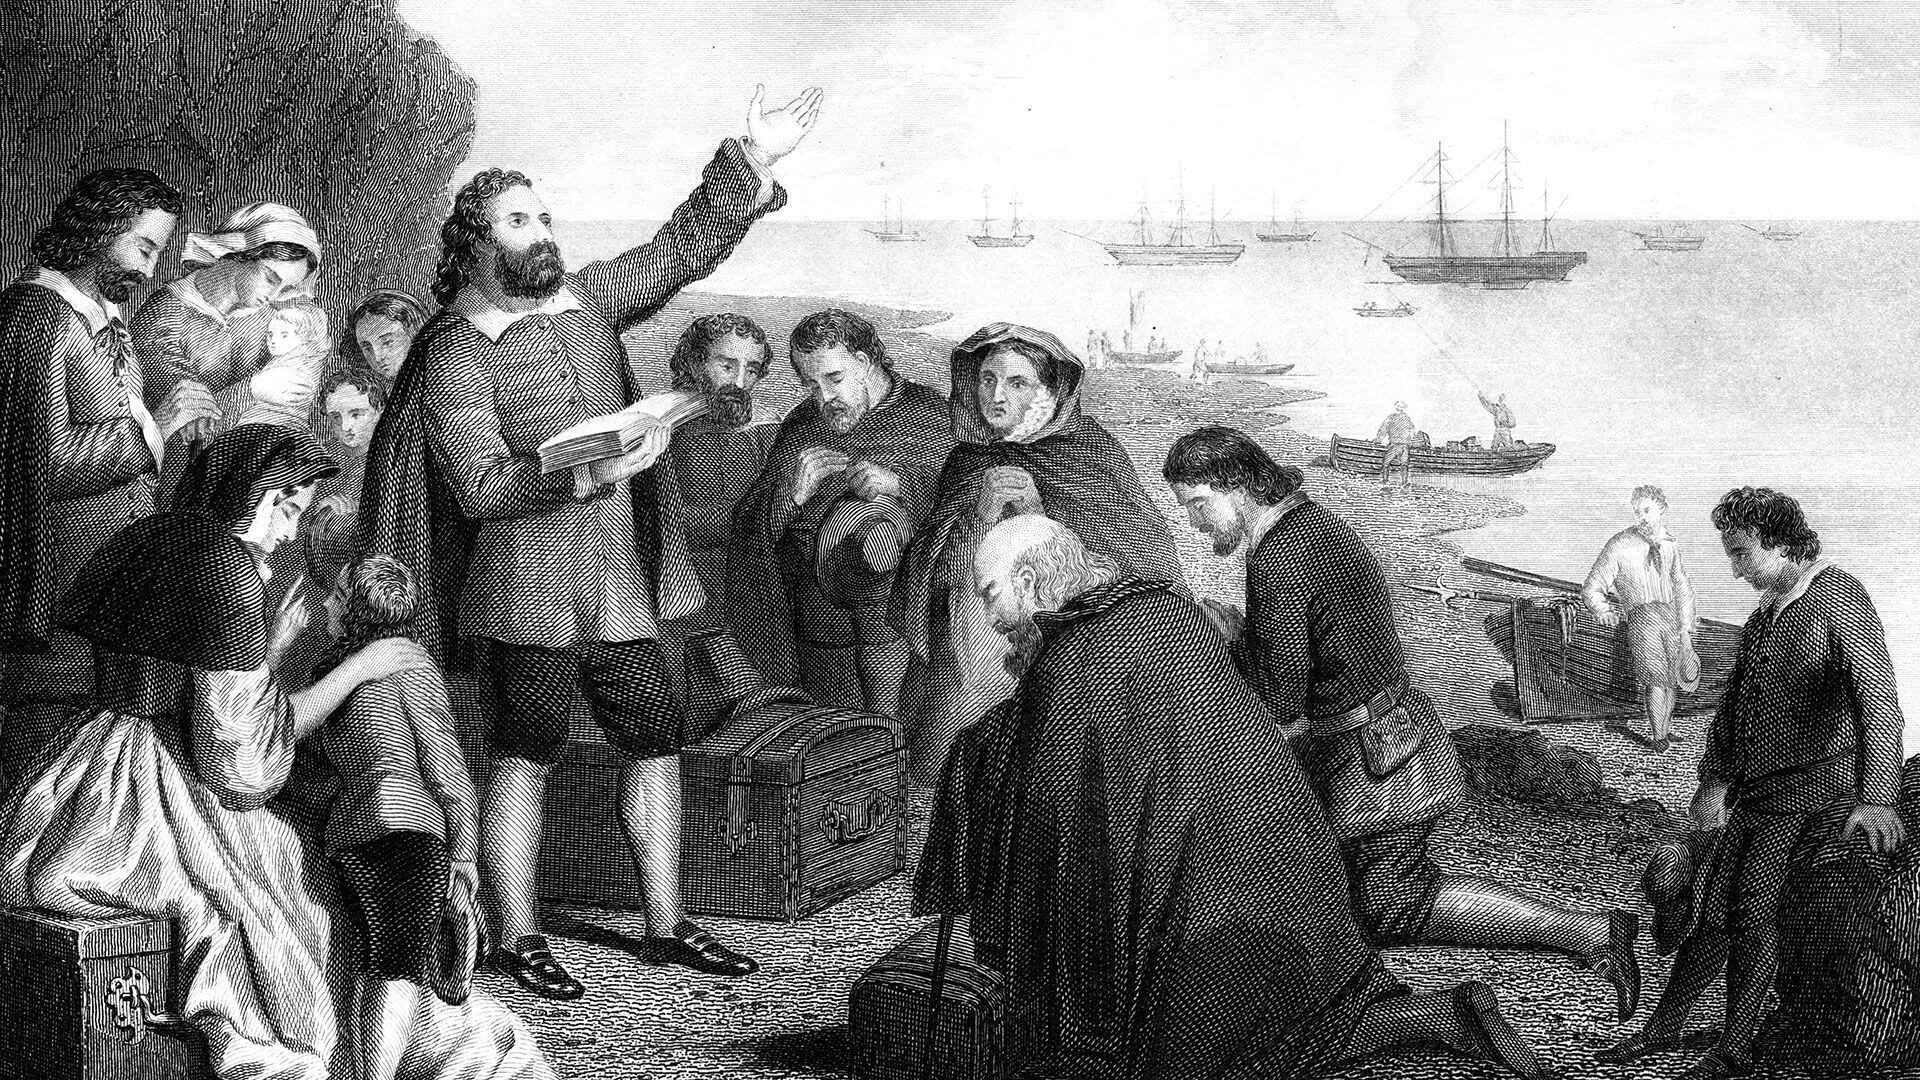 Embarque de los Padres Peregrinos en 1620. Puritanos de la Iglesia Separatista inglesa, huyeron de la persecución religiosa en 1609 y se exiliaron en los Países Bajos. Decidieron buscar una nueva vida en el Nuevo Mundo y zarparon de Delft en un pequeño barco, el "Speedwell", para encontrarse con otro navío, el "Mayflower". Resultó que sólo el Mayflower podría soportar los rigores del viaje trasatlántico, y todos los peregrinos zarparon a bordo de él desde Plymouth. Desembarcaron en Nueva Inglaterra 102 días después (Photo by The Print Collector/Print Collector/Getty Images)